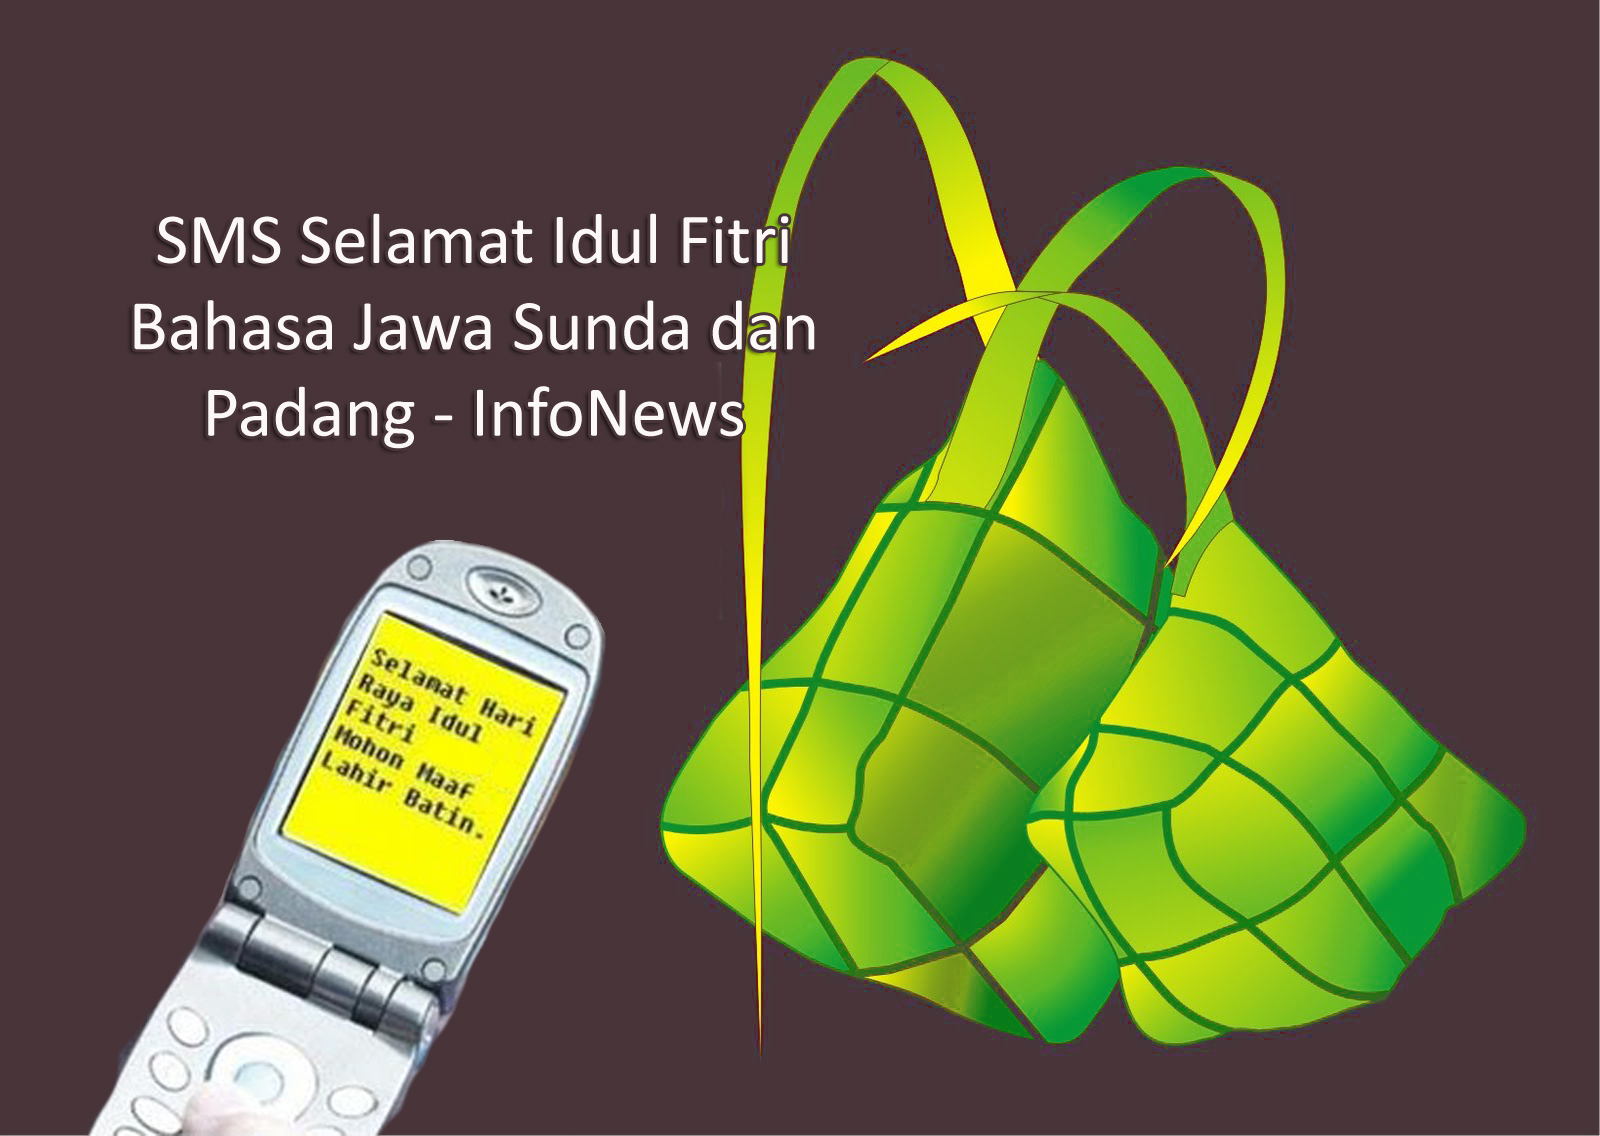 SMS Selamat Idul Fitri Bahasa Jawa Sunda Dan Padang InfoNews